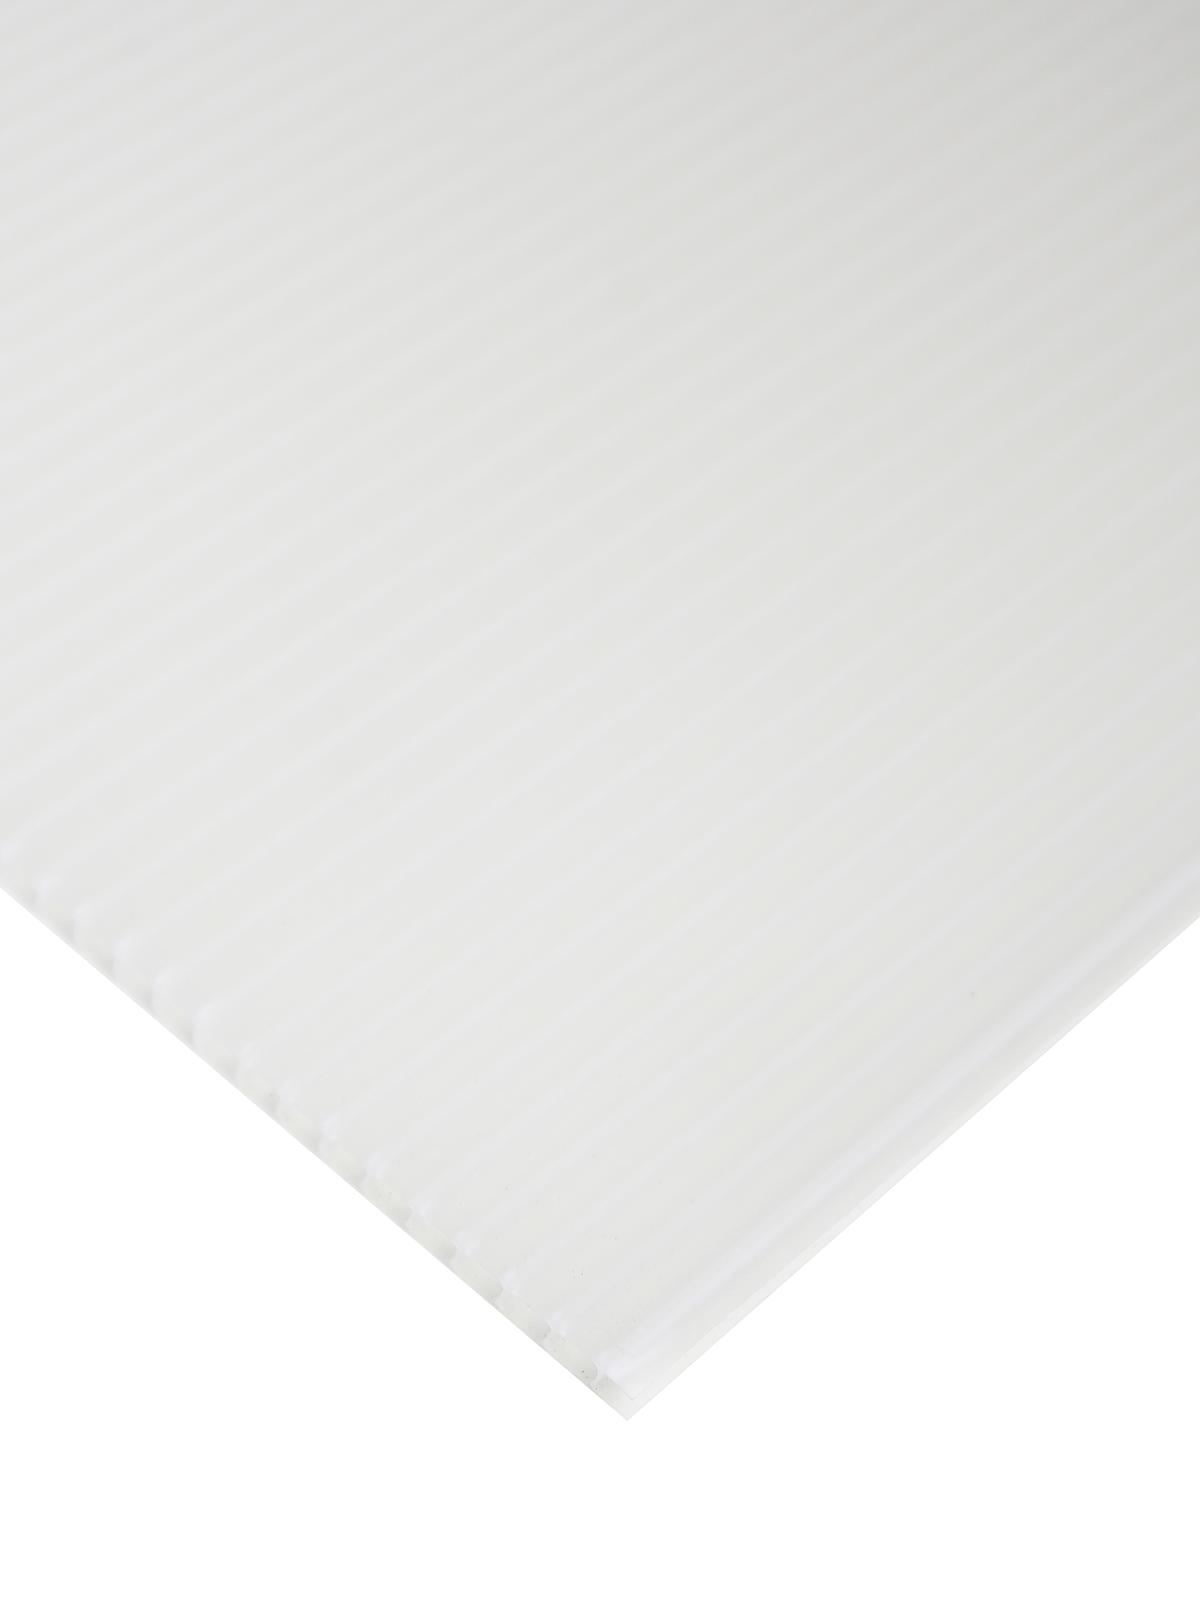 Plasticor Corrugated Boards Clear 20 In. X 30 In.